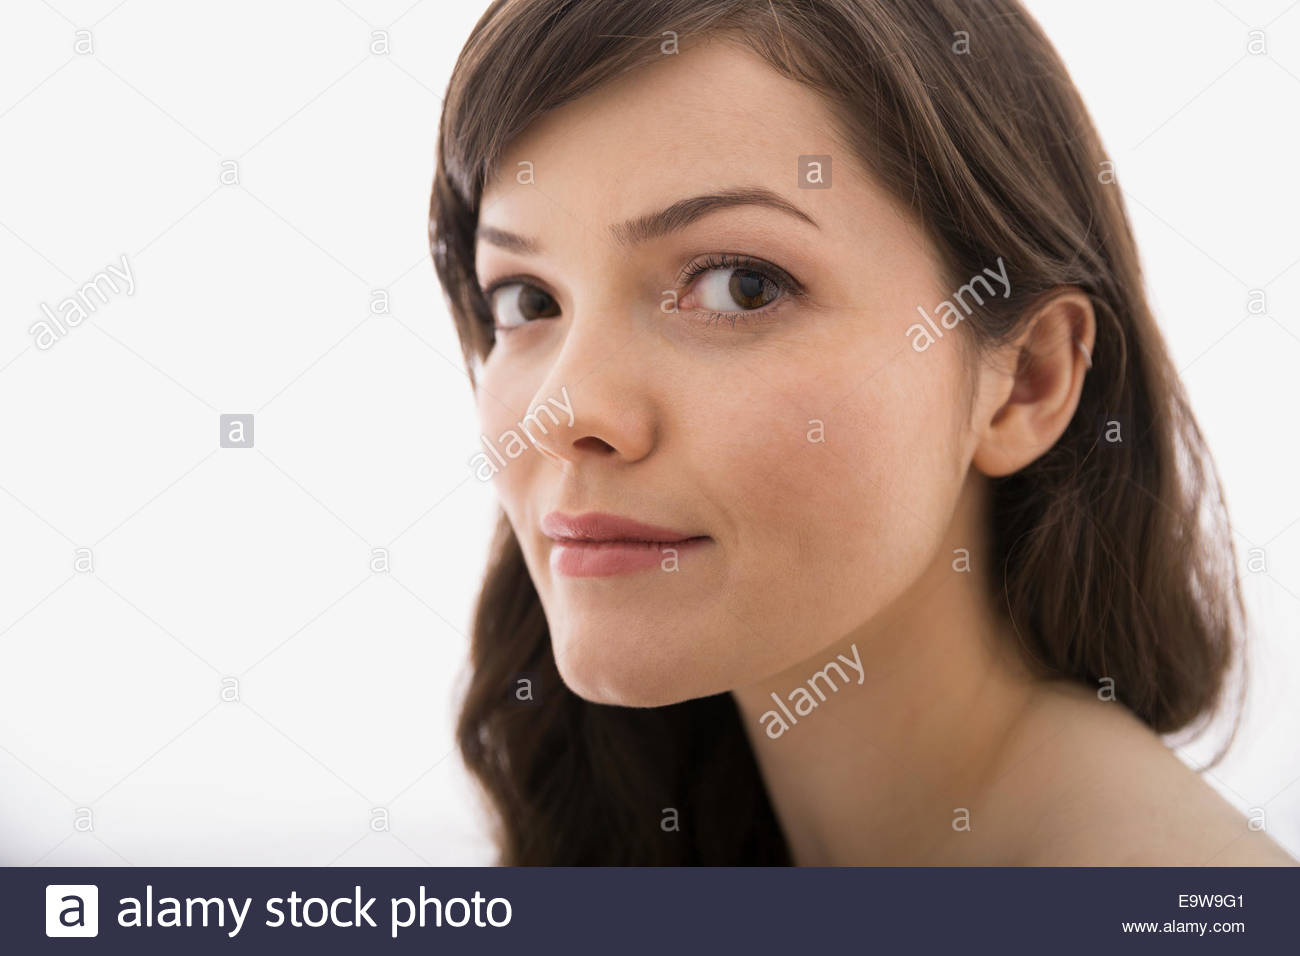 Close up portrait of confident brunette woman Stock Photo